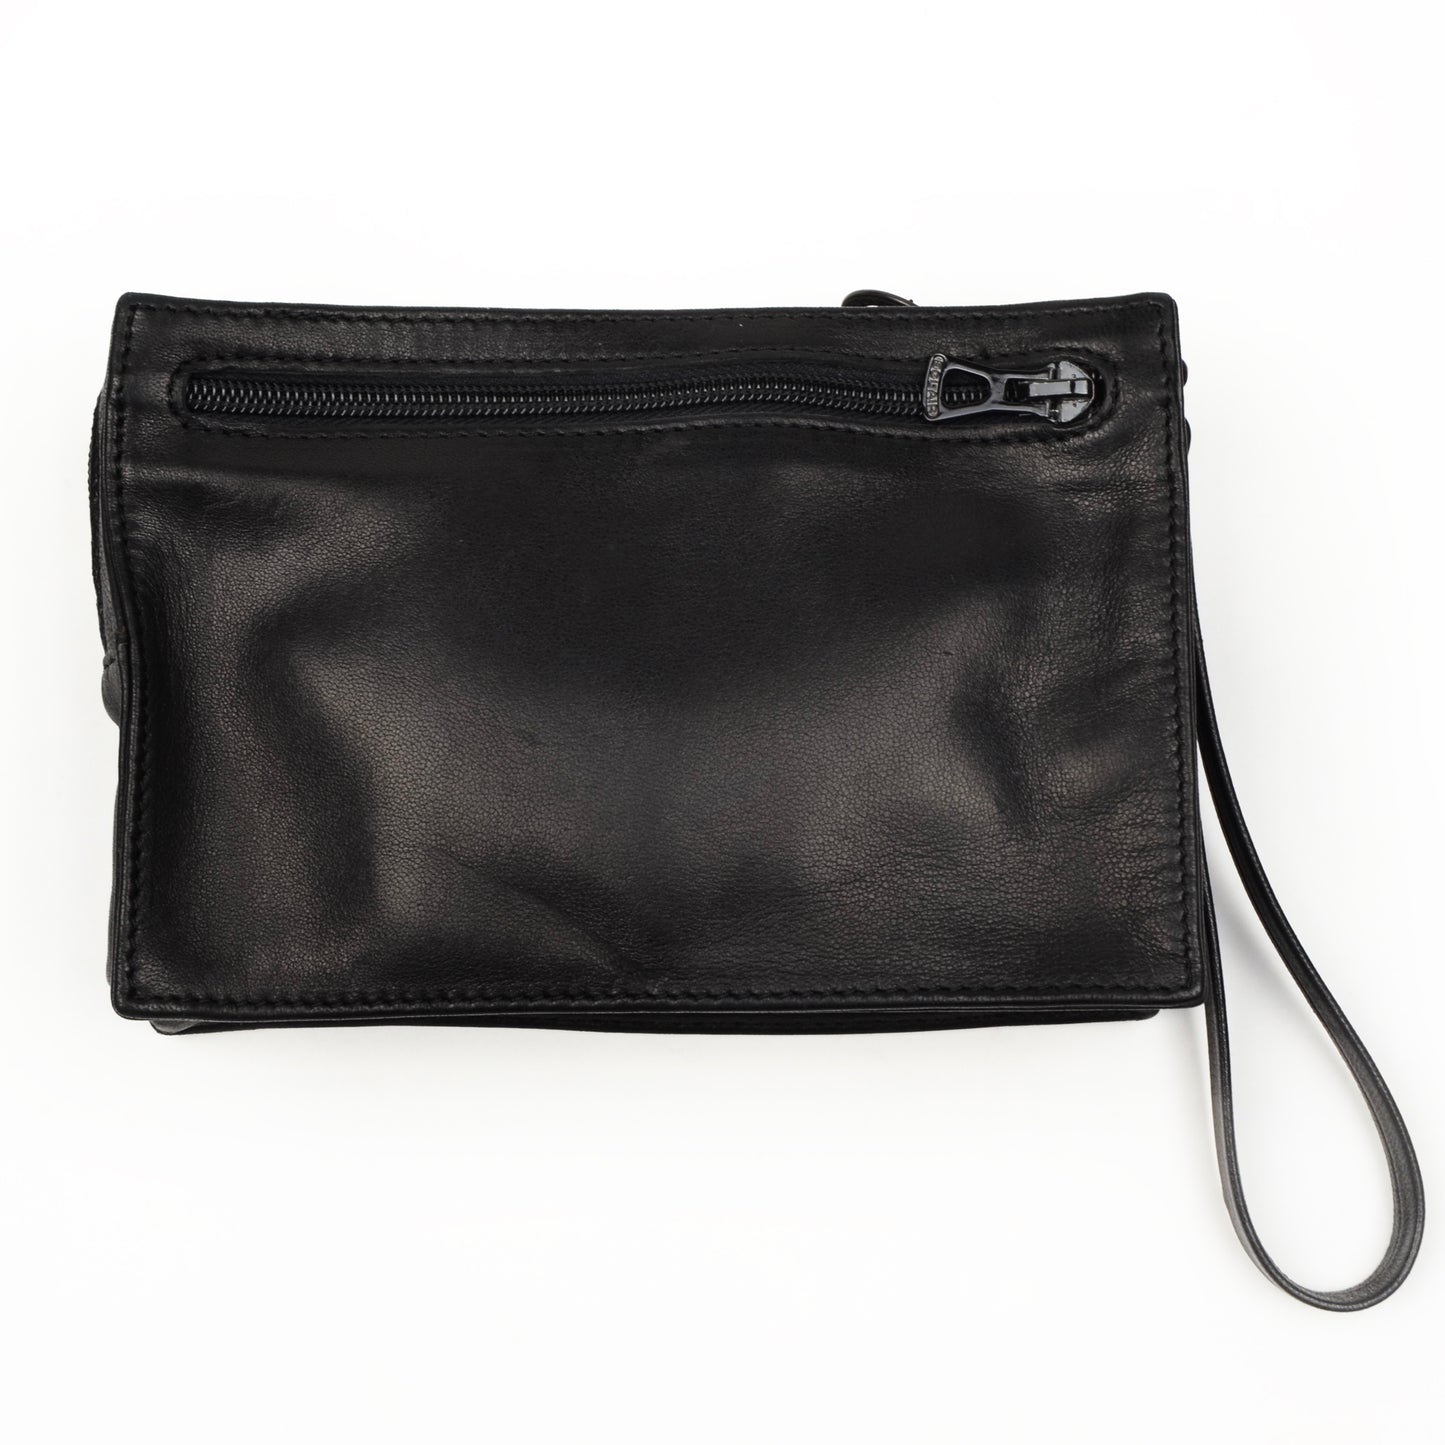 Longchamp Paris Small Travel Bag/Pouch - Black